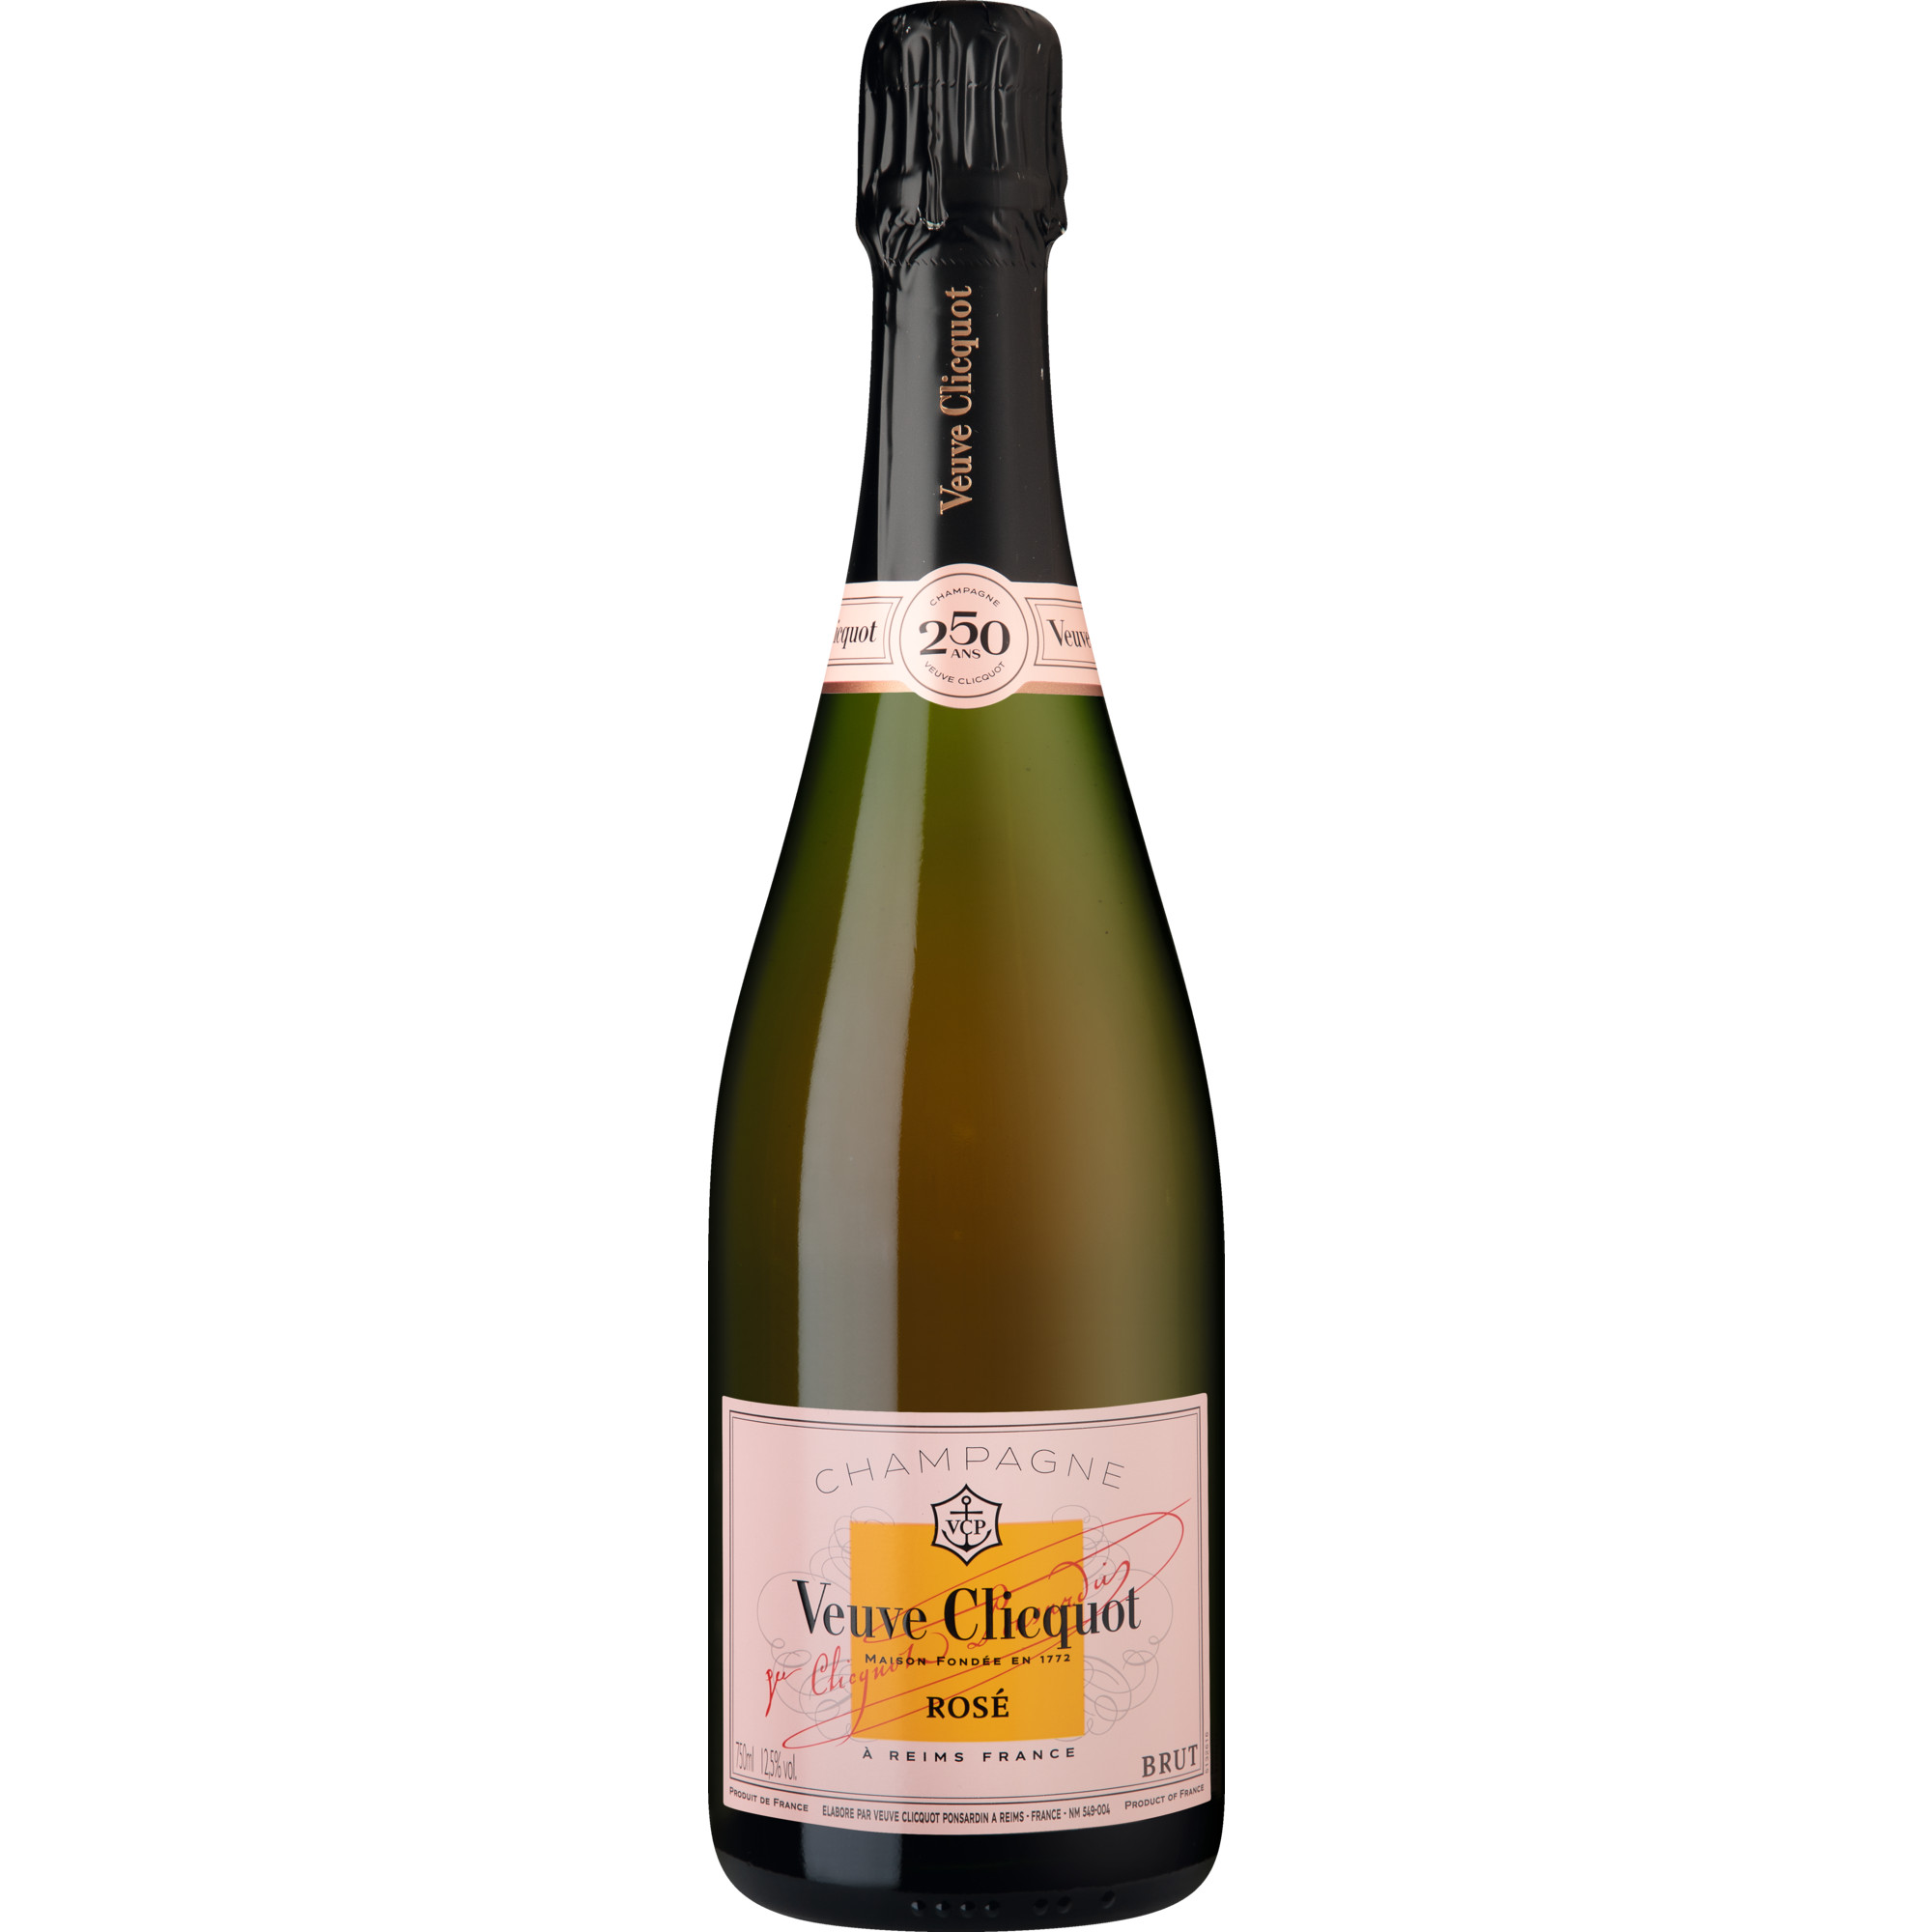 Champagne Veuve Clicquot Ponsardin Rosé, Brut, Champagne AC, Geschenketui 250 Jahre, Champagne, Schaumwein Champagne Veuve Clicquot, Reims, France Hawesko DE